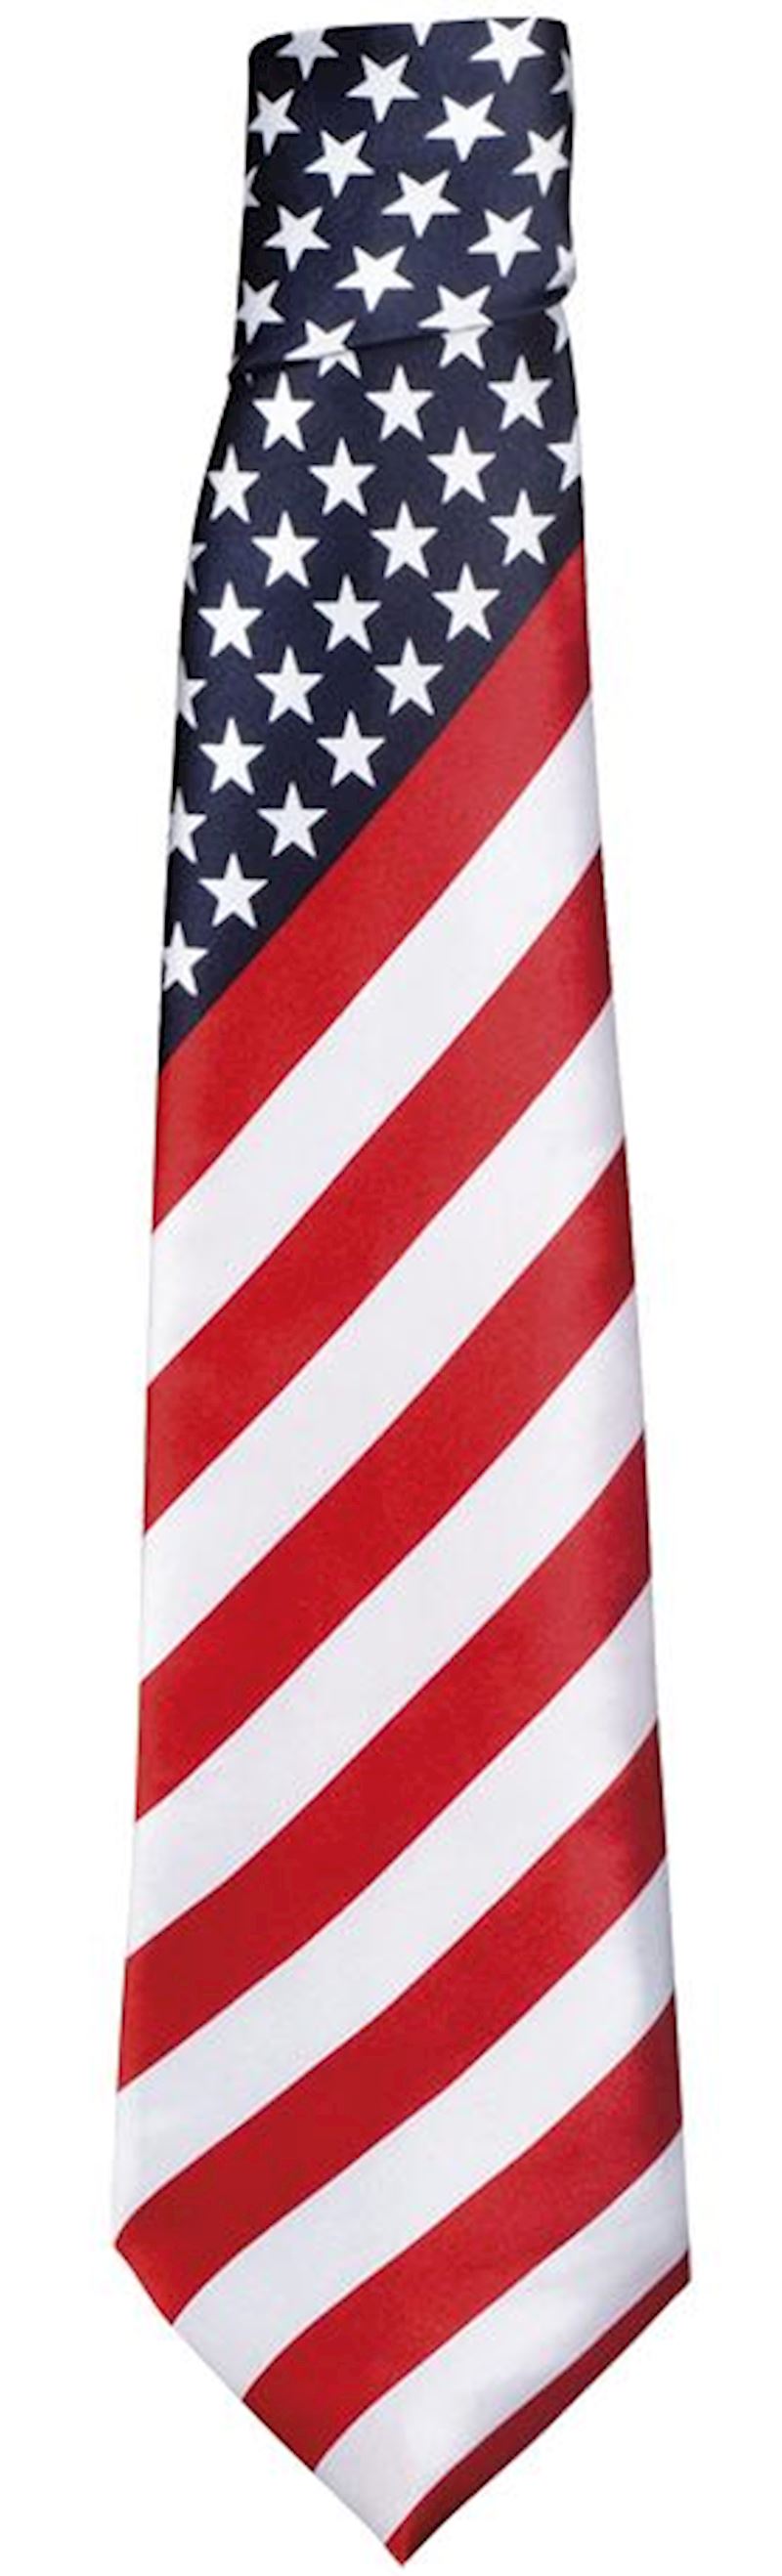 Cravate USA avec drapeau des USA